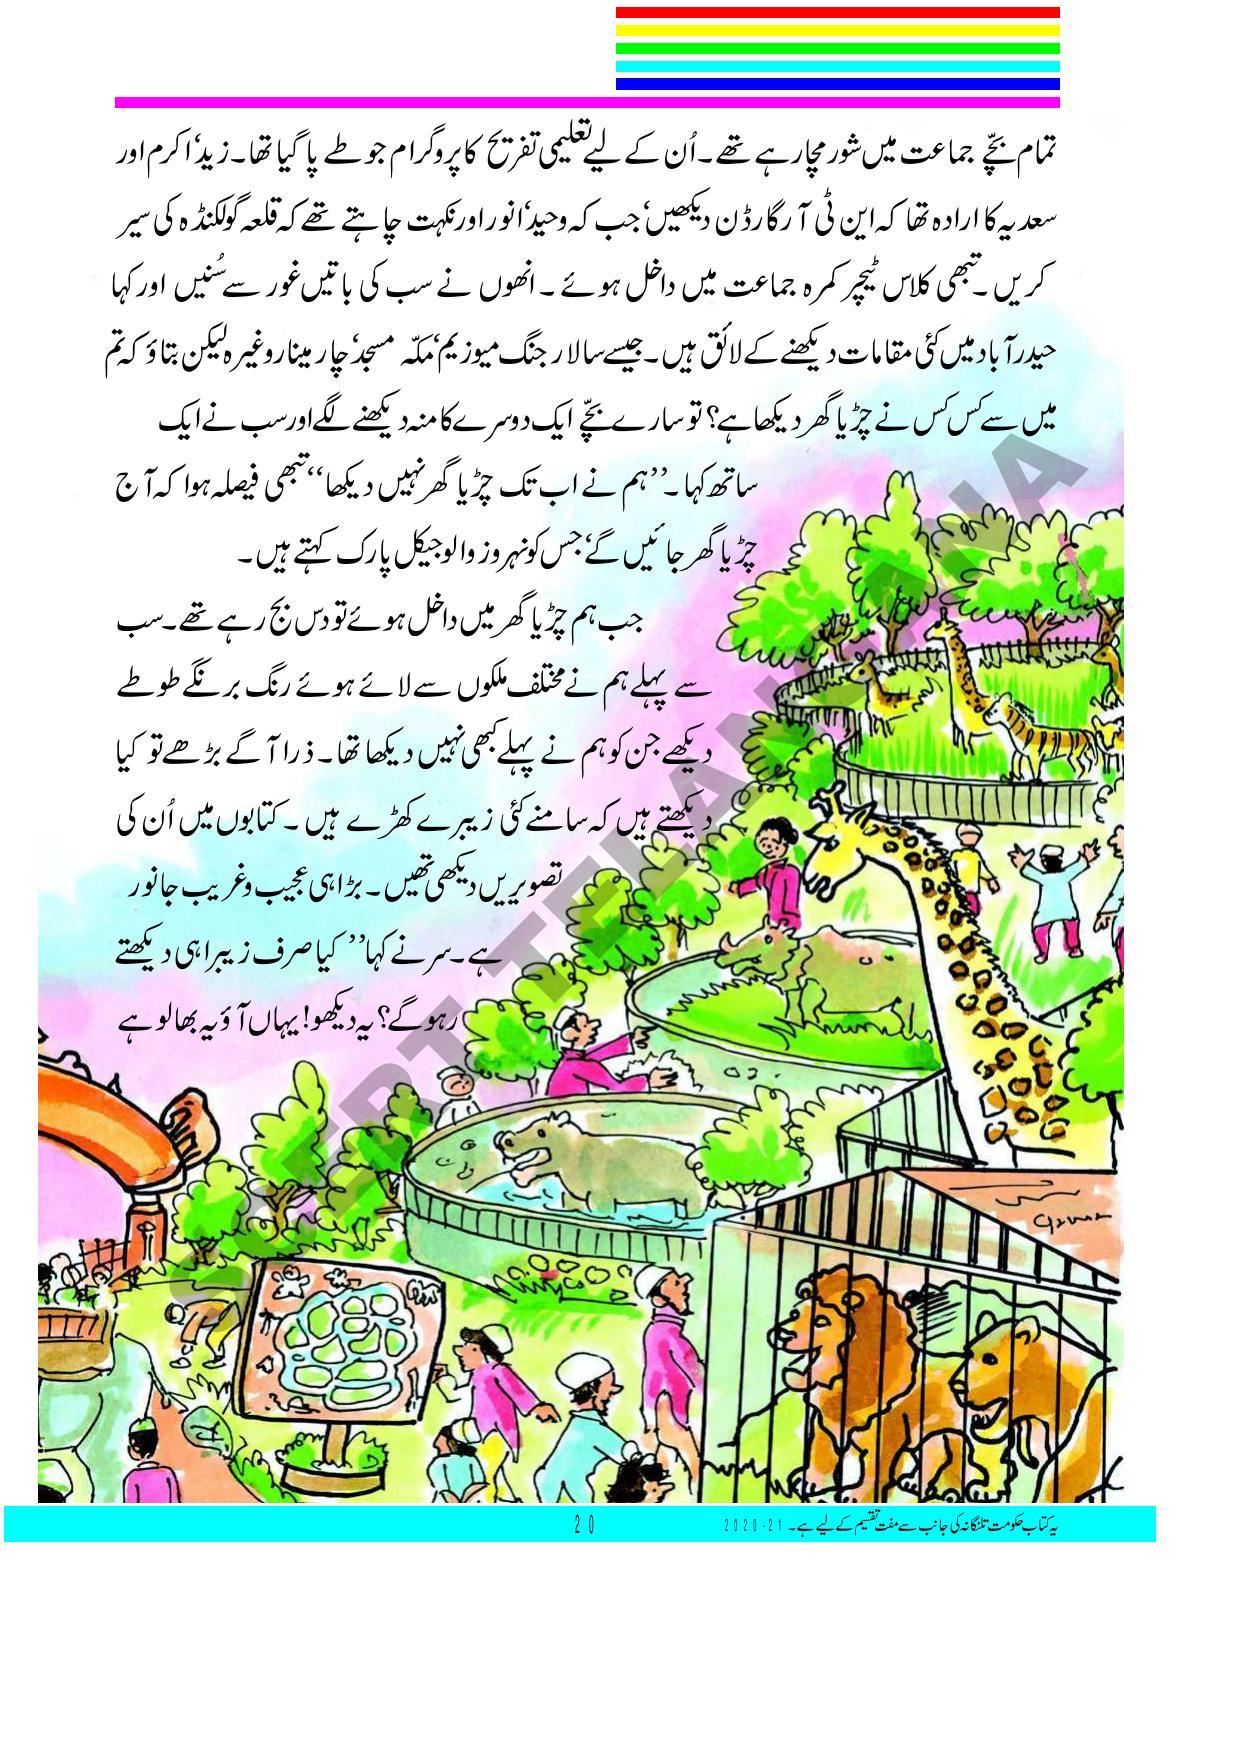 TS SCERT Class 3 First Language(Urdu Medium) Text Book - Page 34